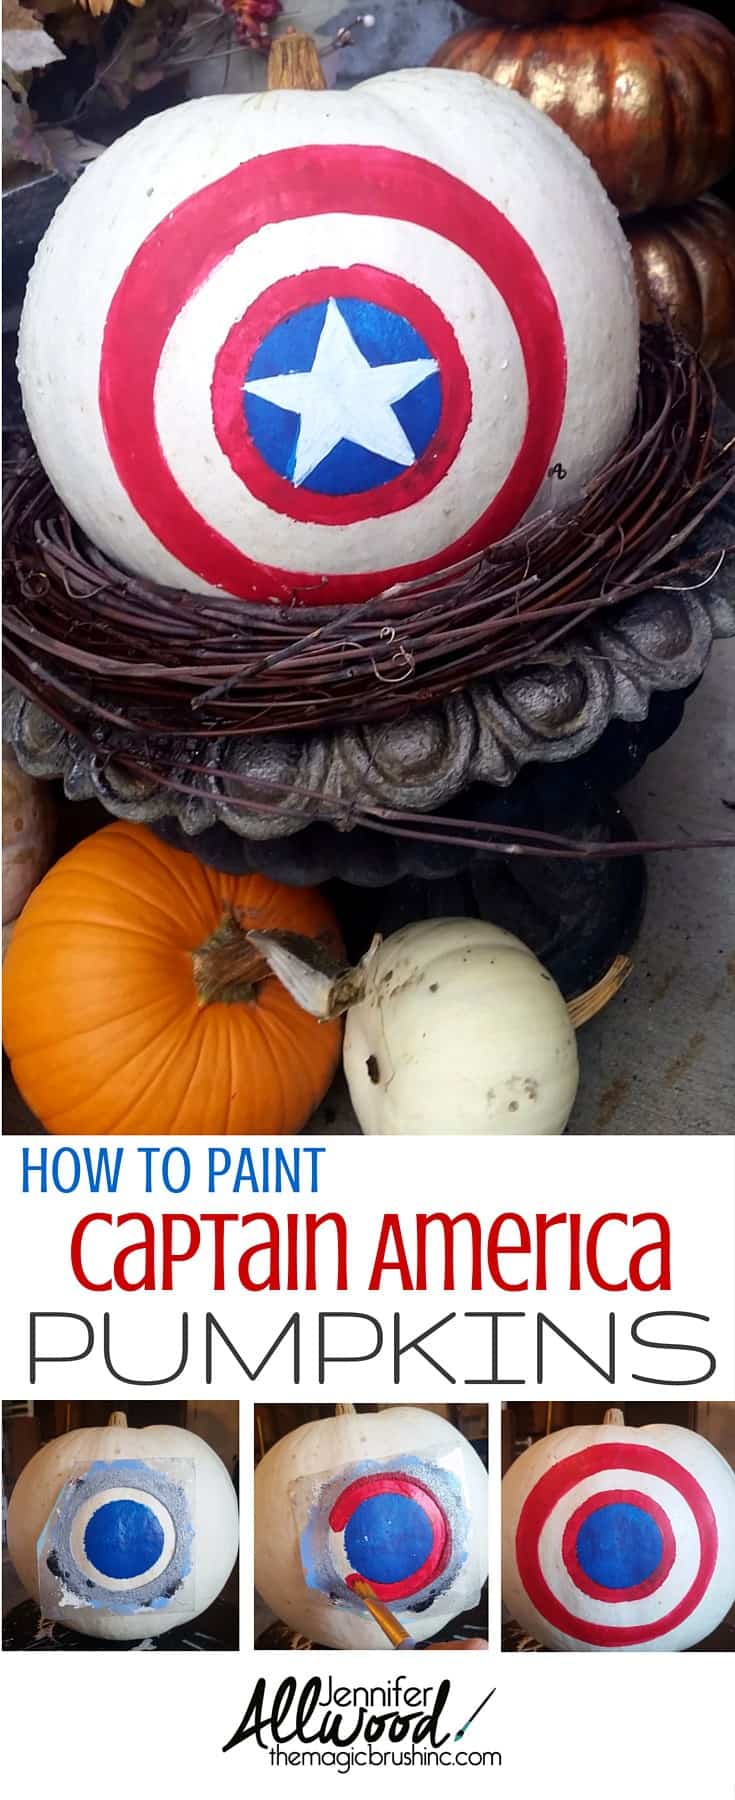 Marvel painted pumpkin ideas